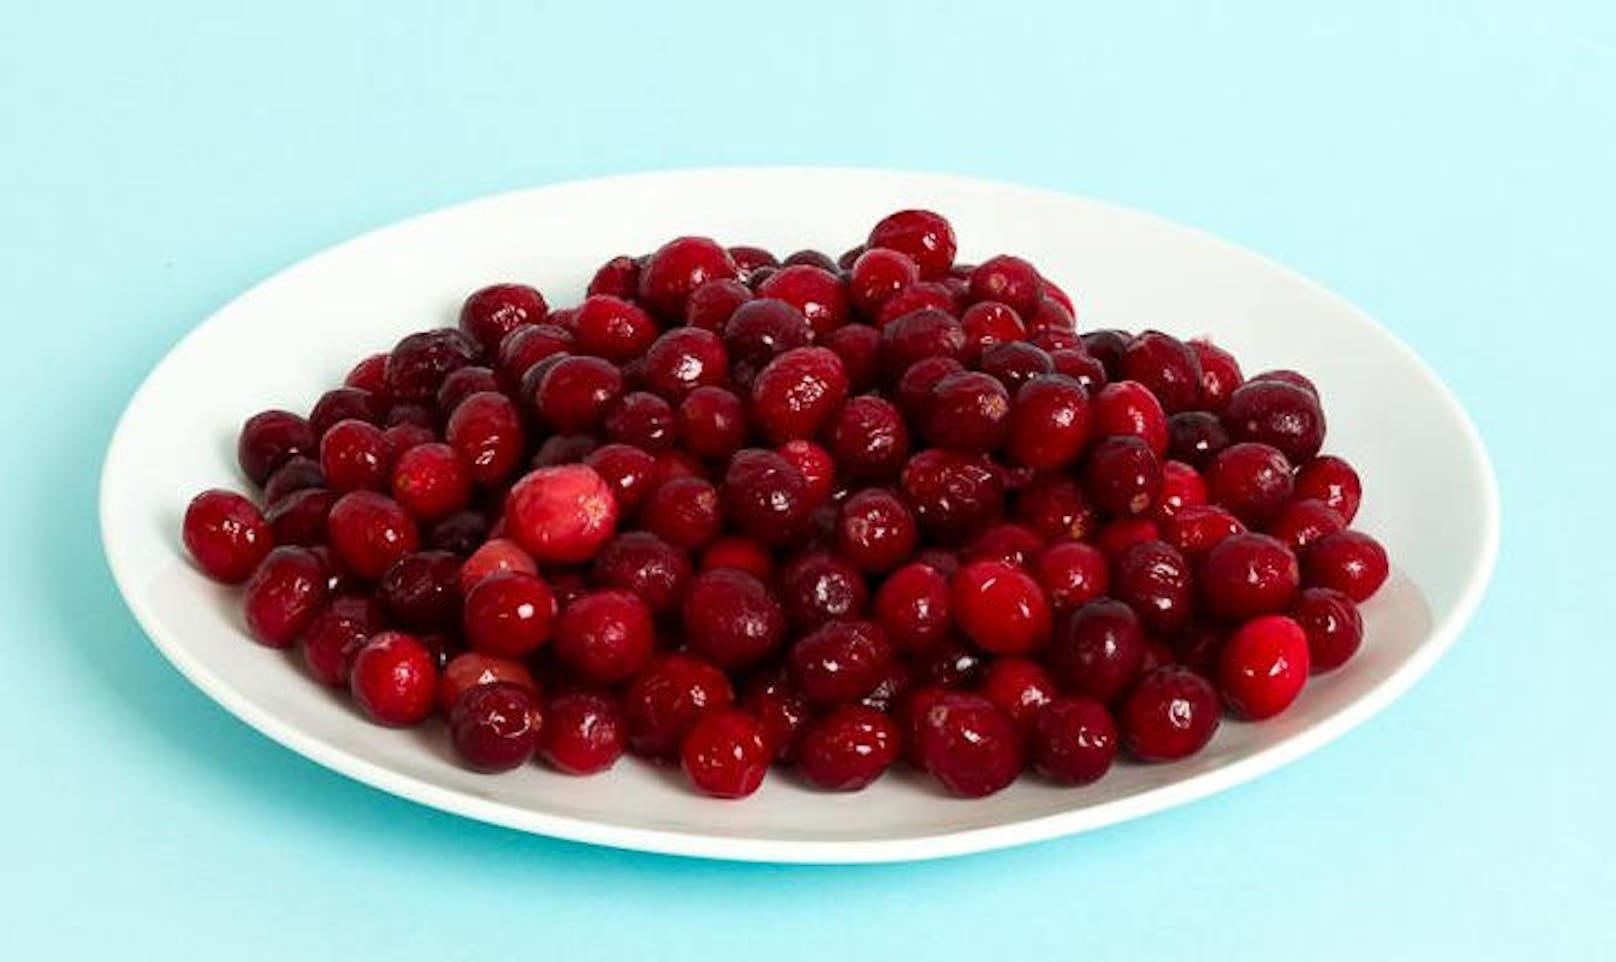 <b>Cranberry-Produkte</b>
Ein altbewährter Helfer: Die roten Früchte säuern den Urin, wodurch sich Bakterien nicht mehr gut vermehren können. Erkundigen Sie sich in der Apotheke nach Säften oder Kapseln.